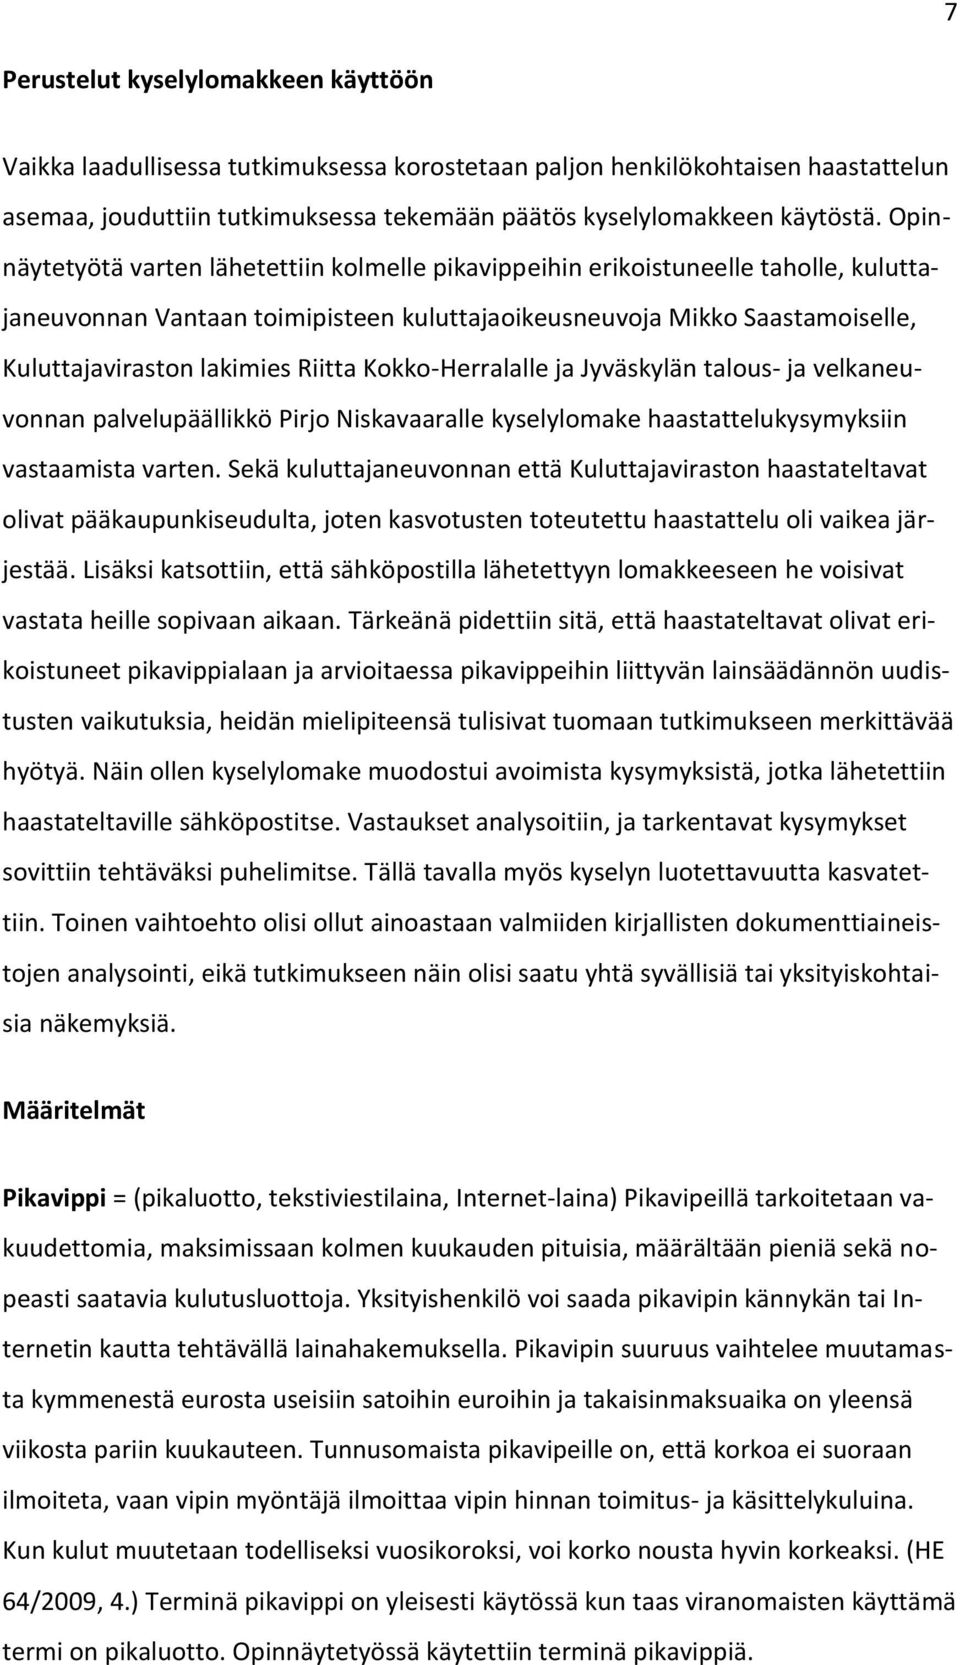 Riitta Kokko-Herralalle ja Jyväskylän talous- ja velkaneuvonnan palvelupäällikkö Pirjo Niskavaaralle kyselylomake haastattelukysymyksiin vastaamista varten.